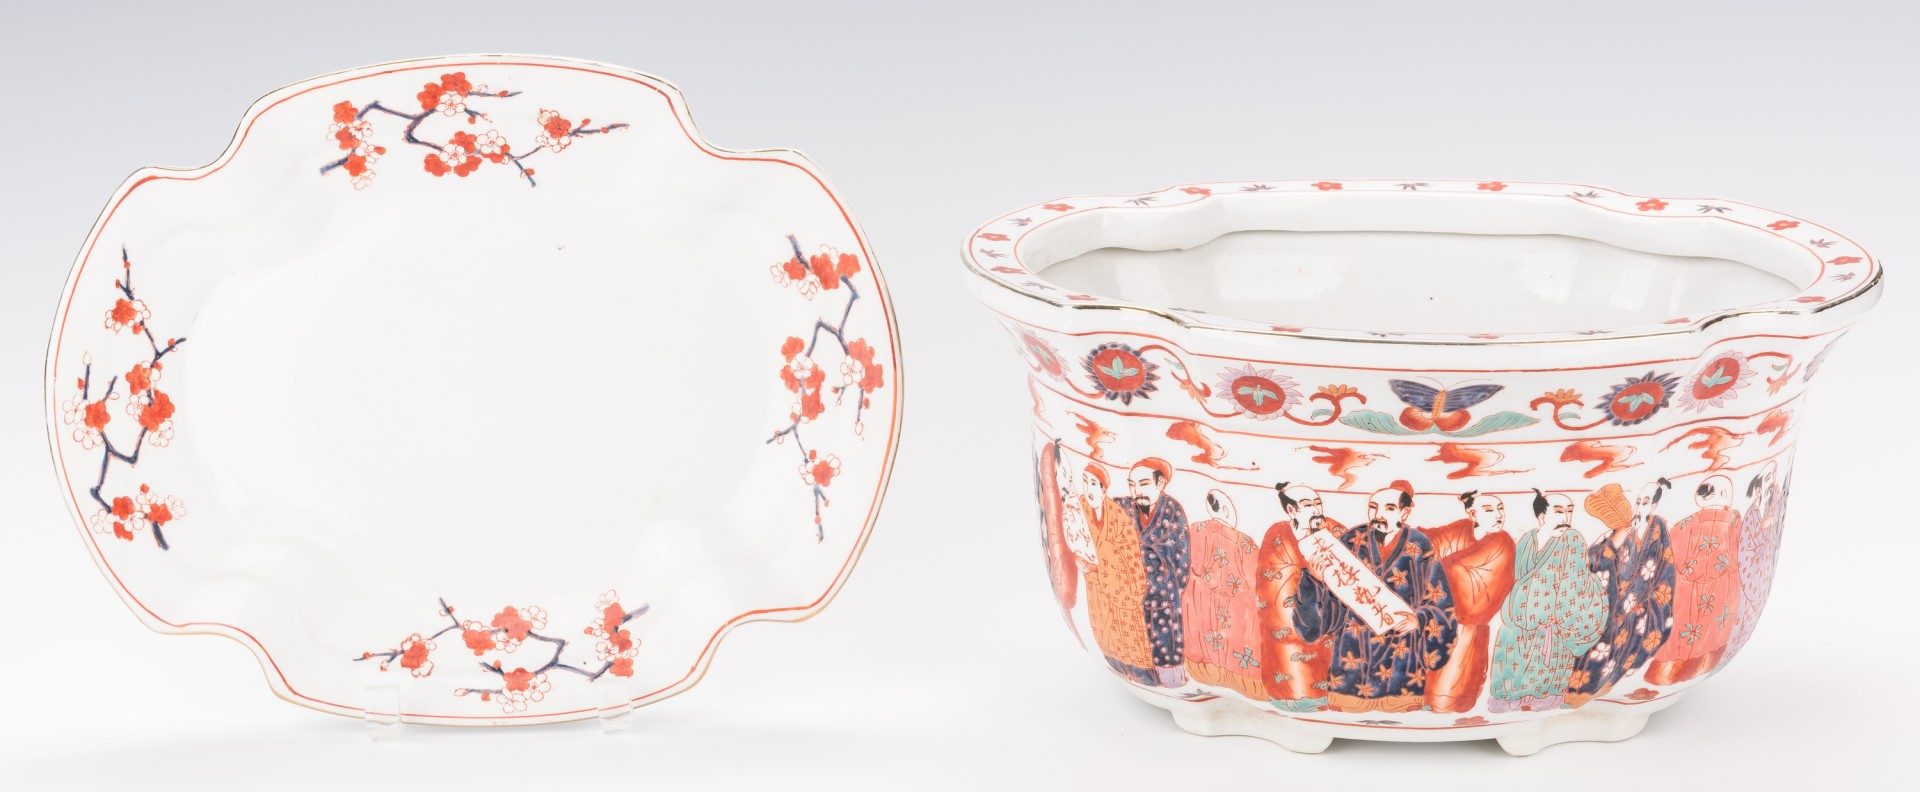 Lot 201: Asian Porcelain Jardiniere